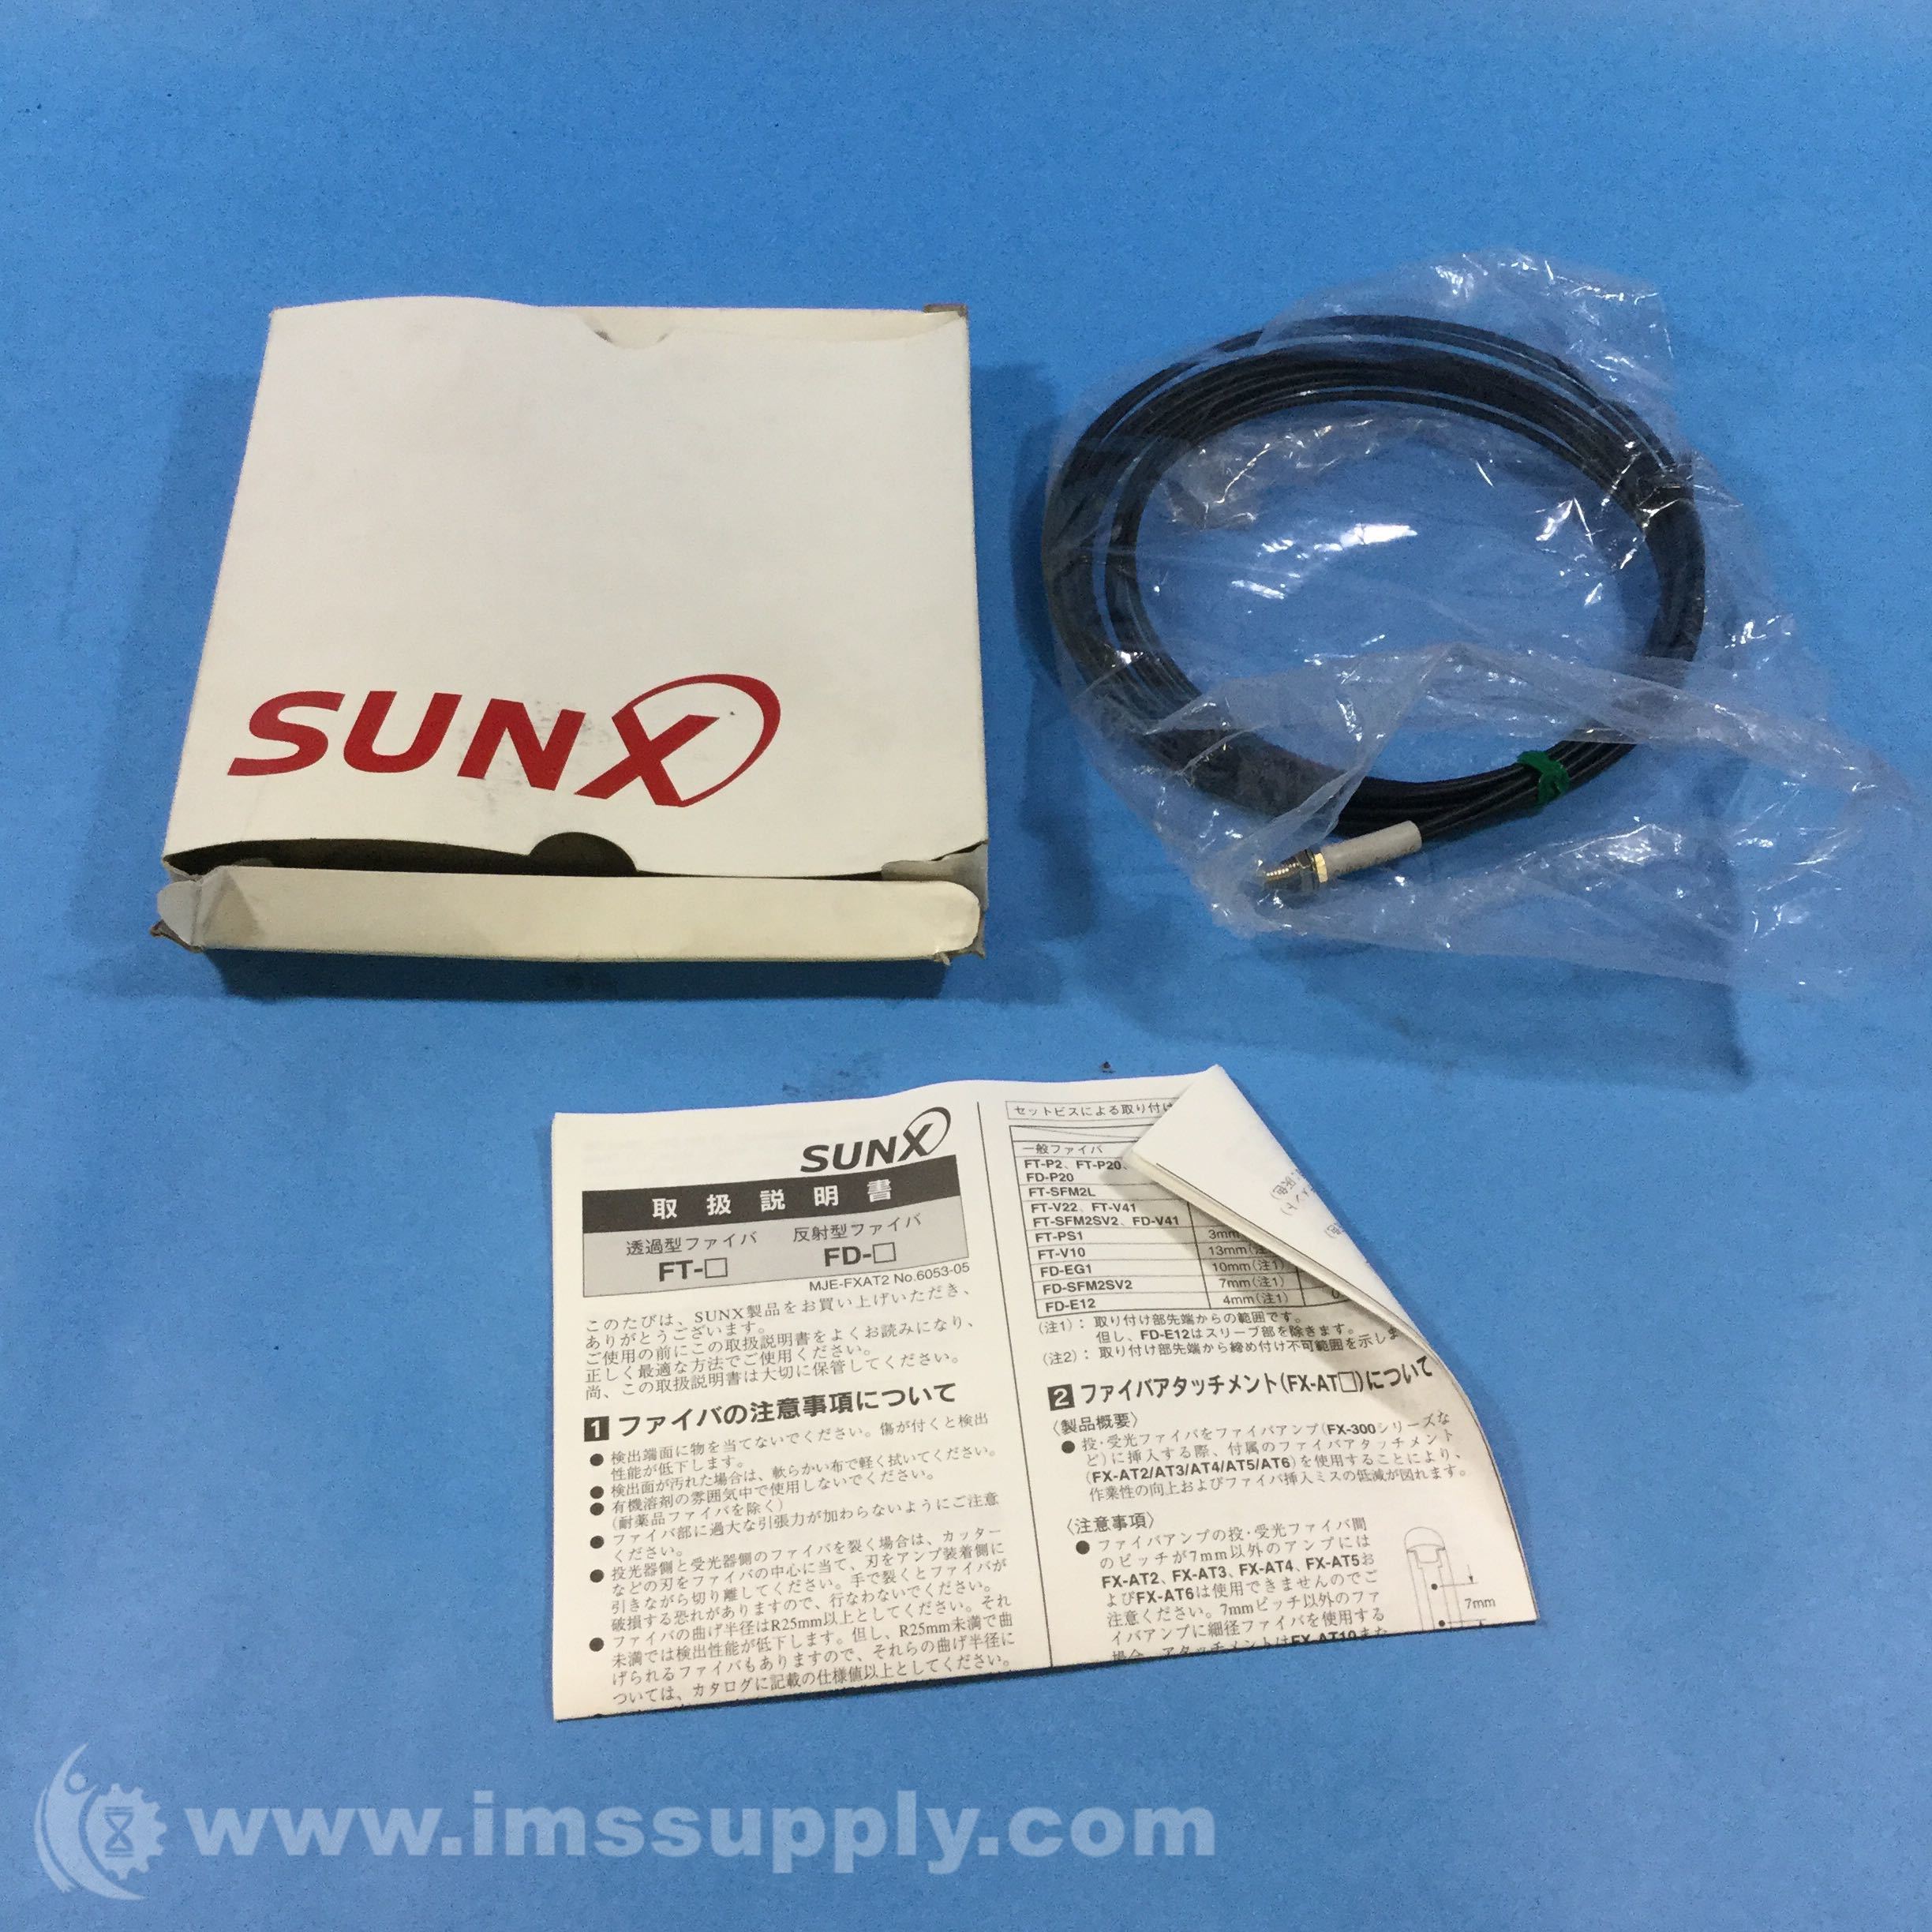 SUNX FT-V41 NEW Fiber Optic Sensor In Box 